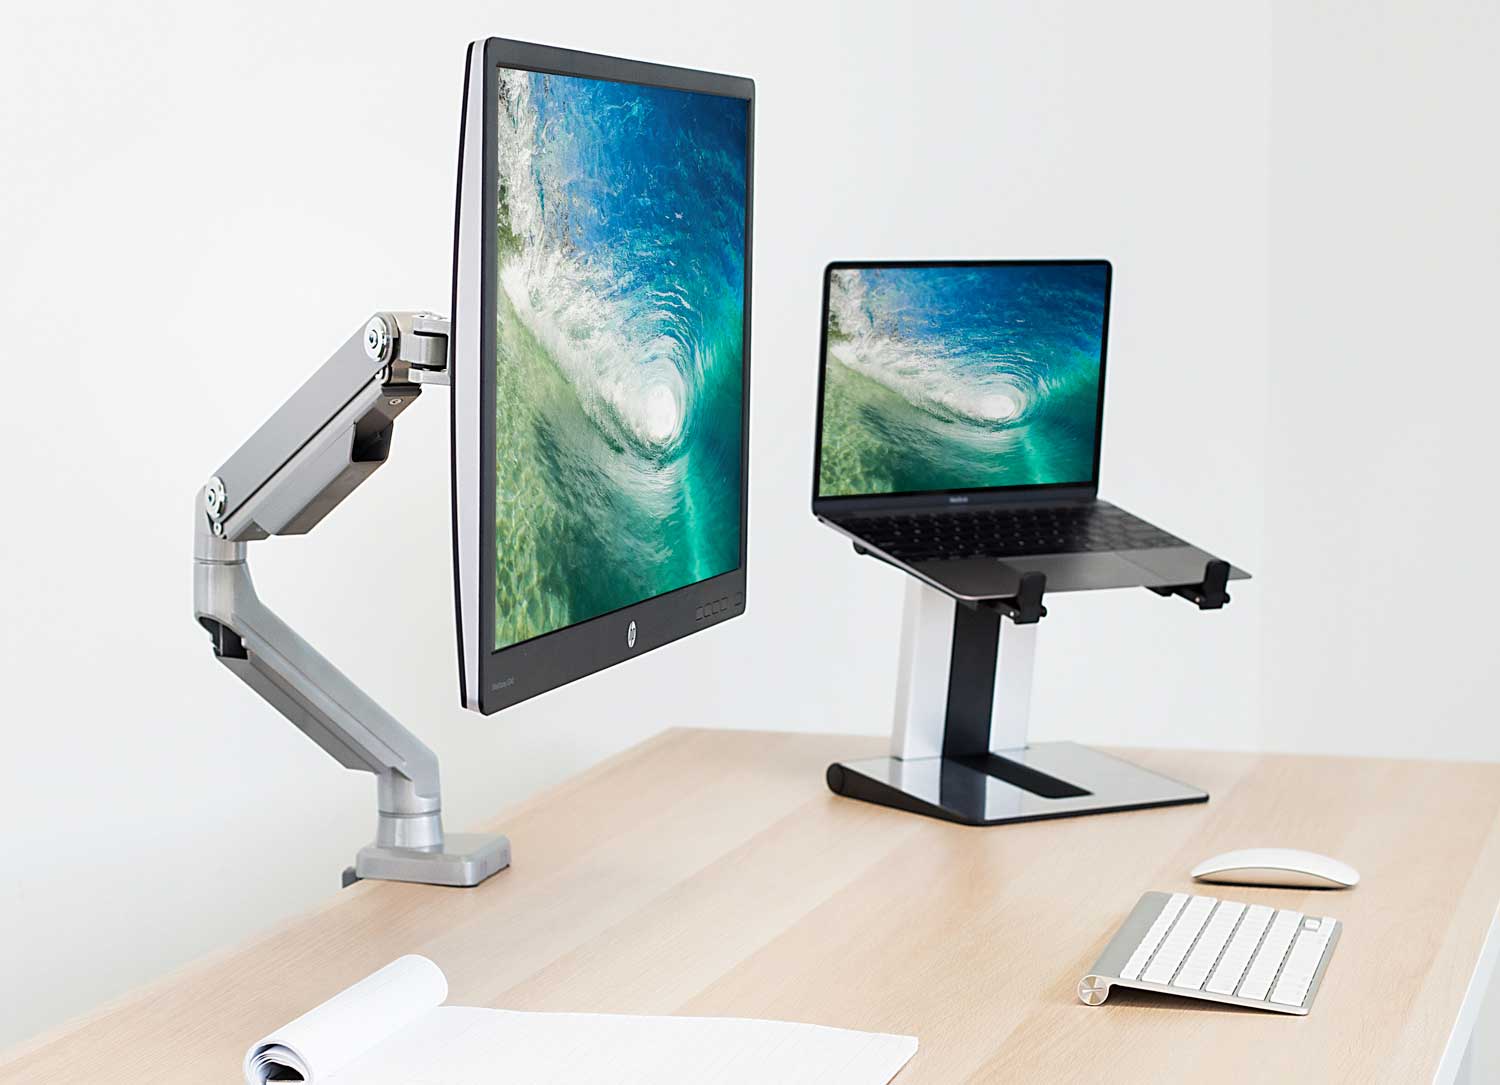 Single Monitor Desk Mount – Mount-It!